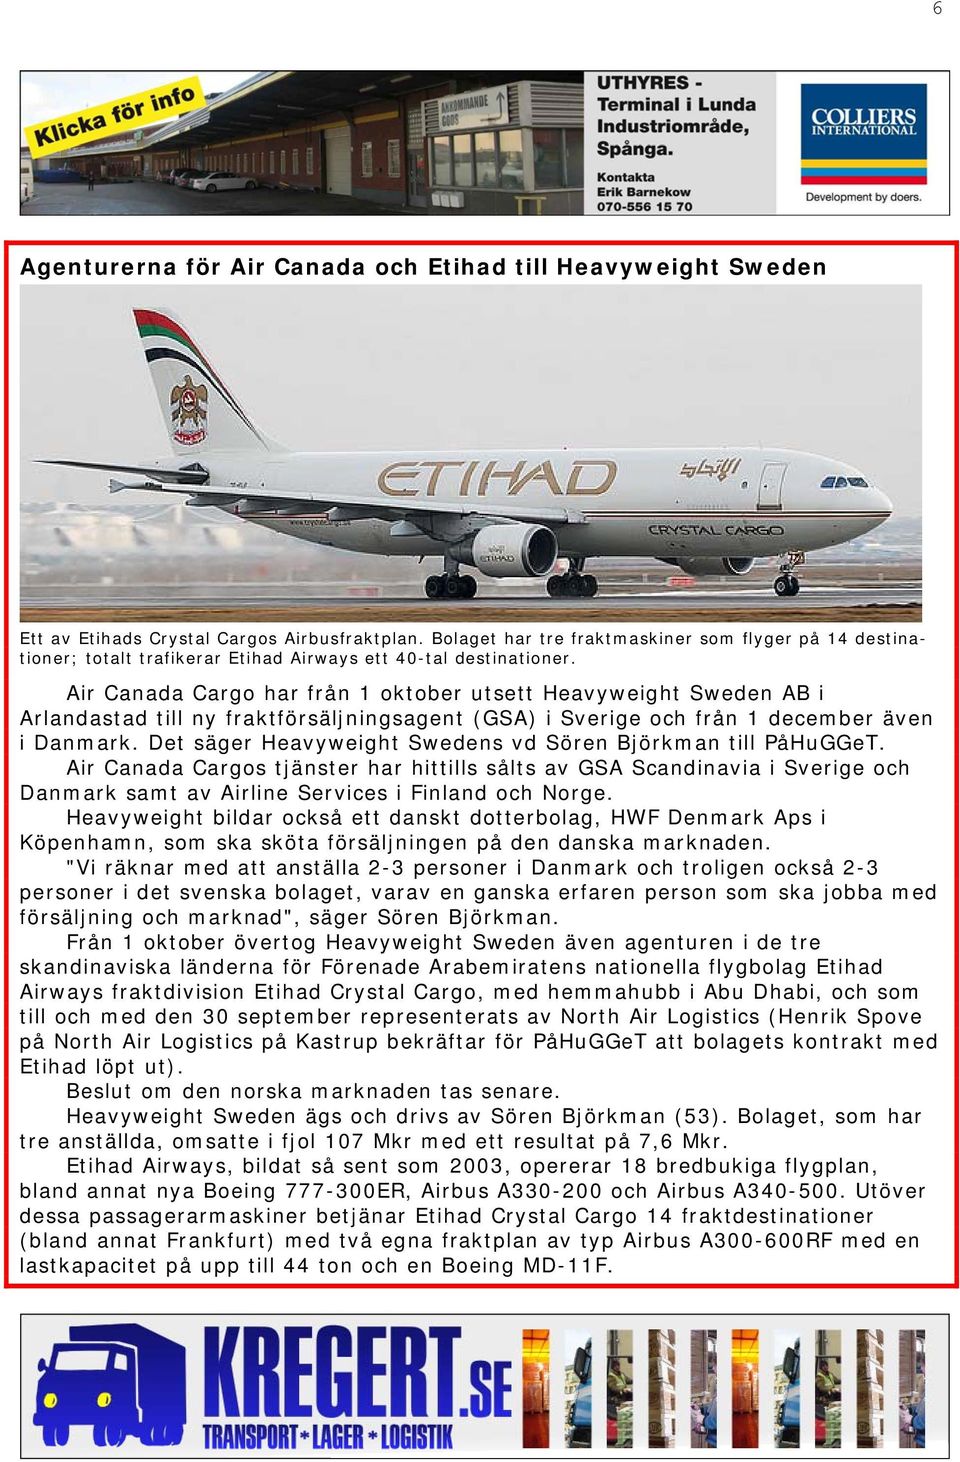 Air Canada Cargo har från 1 oktober utsett Heavyweight Sweden AB i Arlandastad till ny fraktförsäljningsagent (GSA) i Sverige och från 1 december även i Danmark.